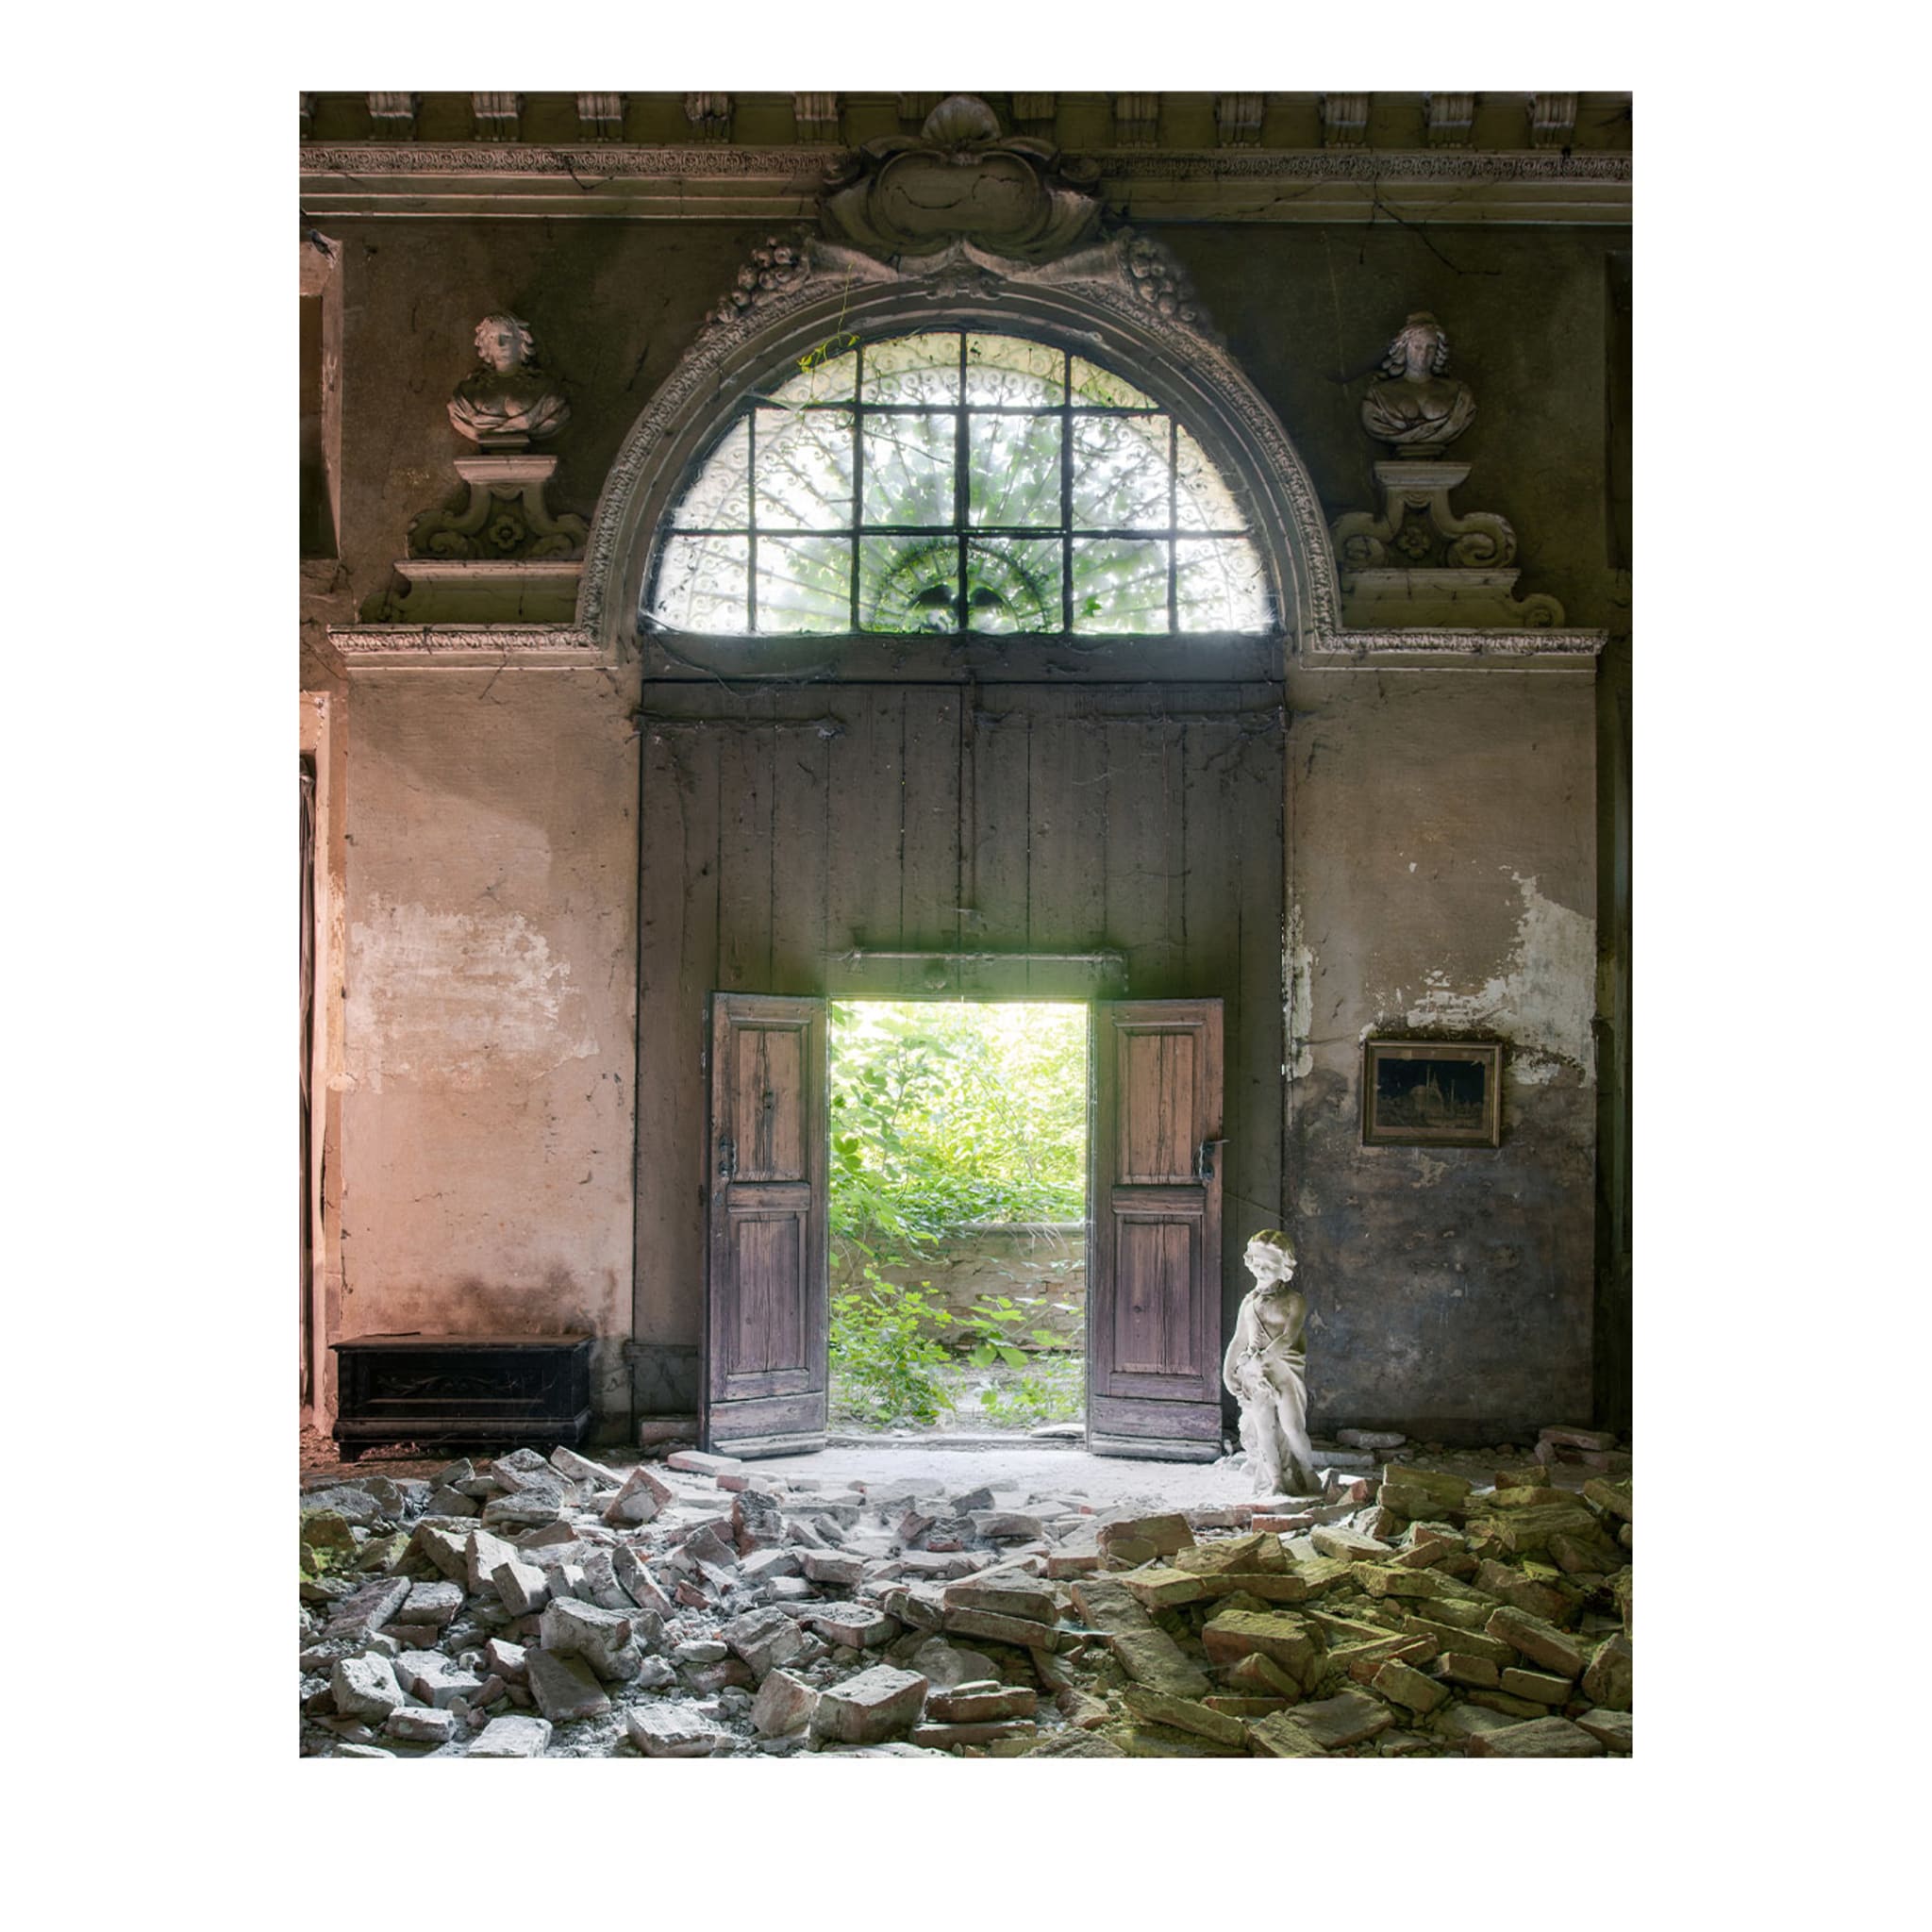 La Gran Belleza - Il Canone di Pachelbel - Impresión fotográfica - Vista principal